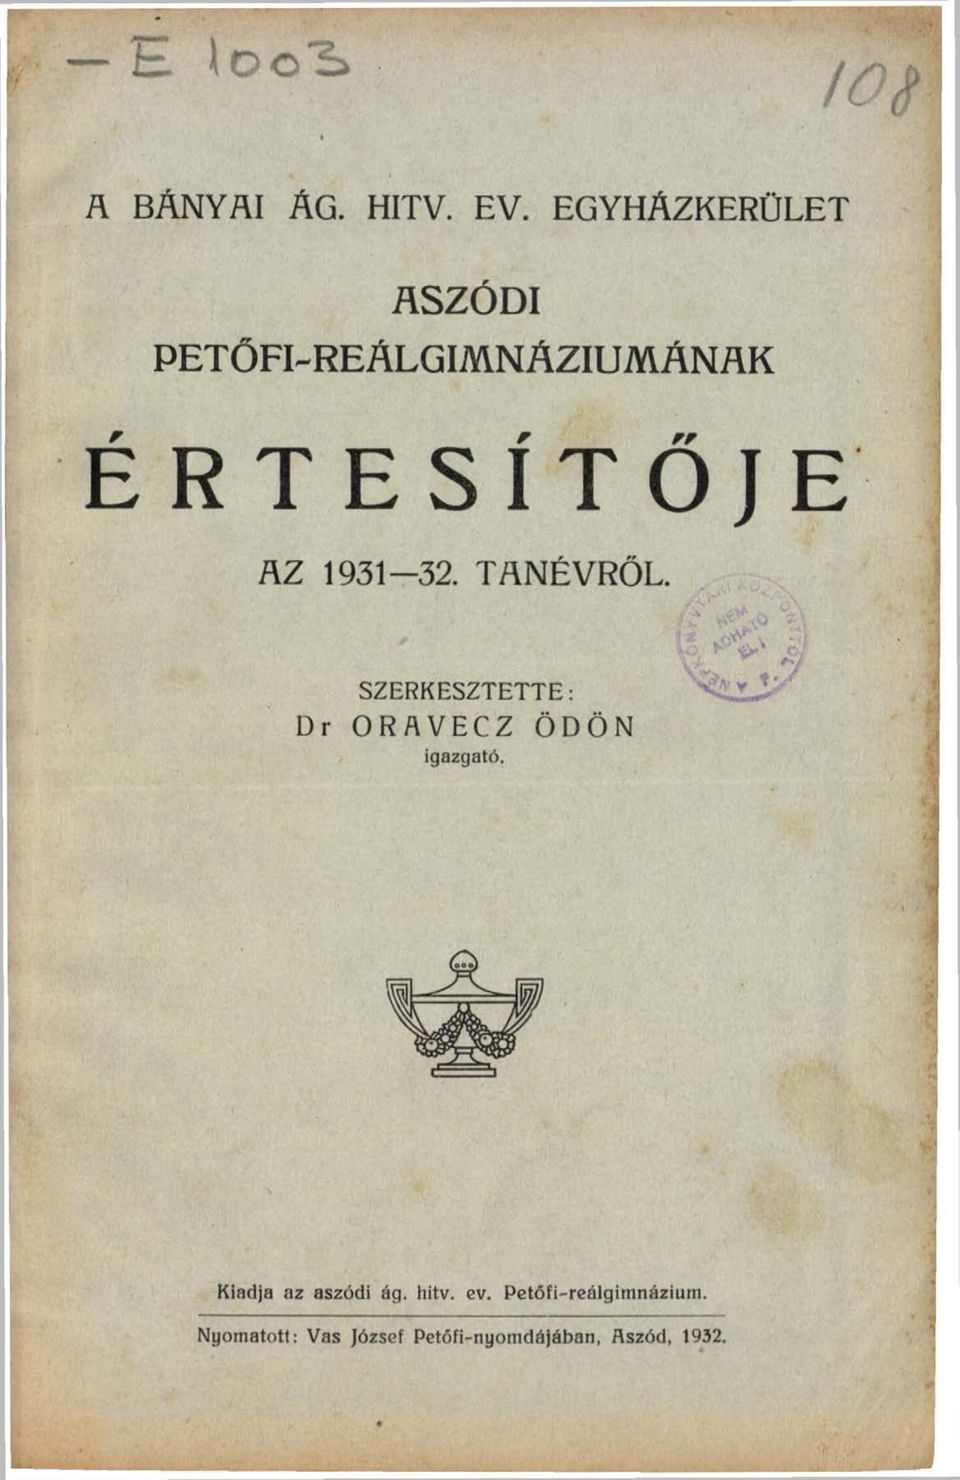 AZ 1931-32. TANÉVRŐL. SZERKESZTETTE: Dr ORAVECZ ÖDÖN igazgató.